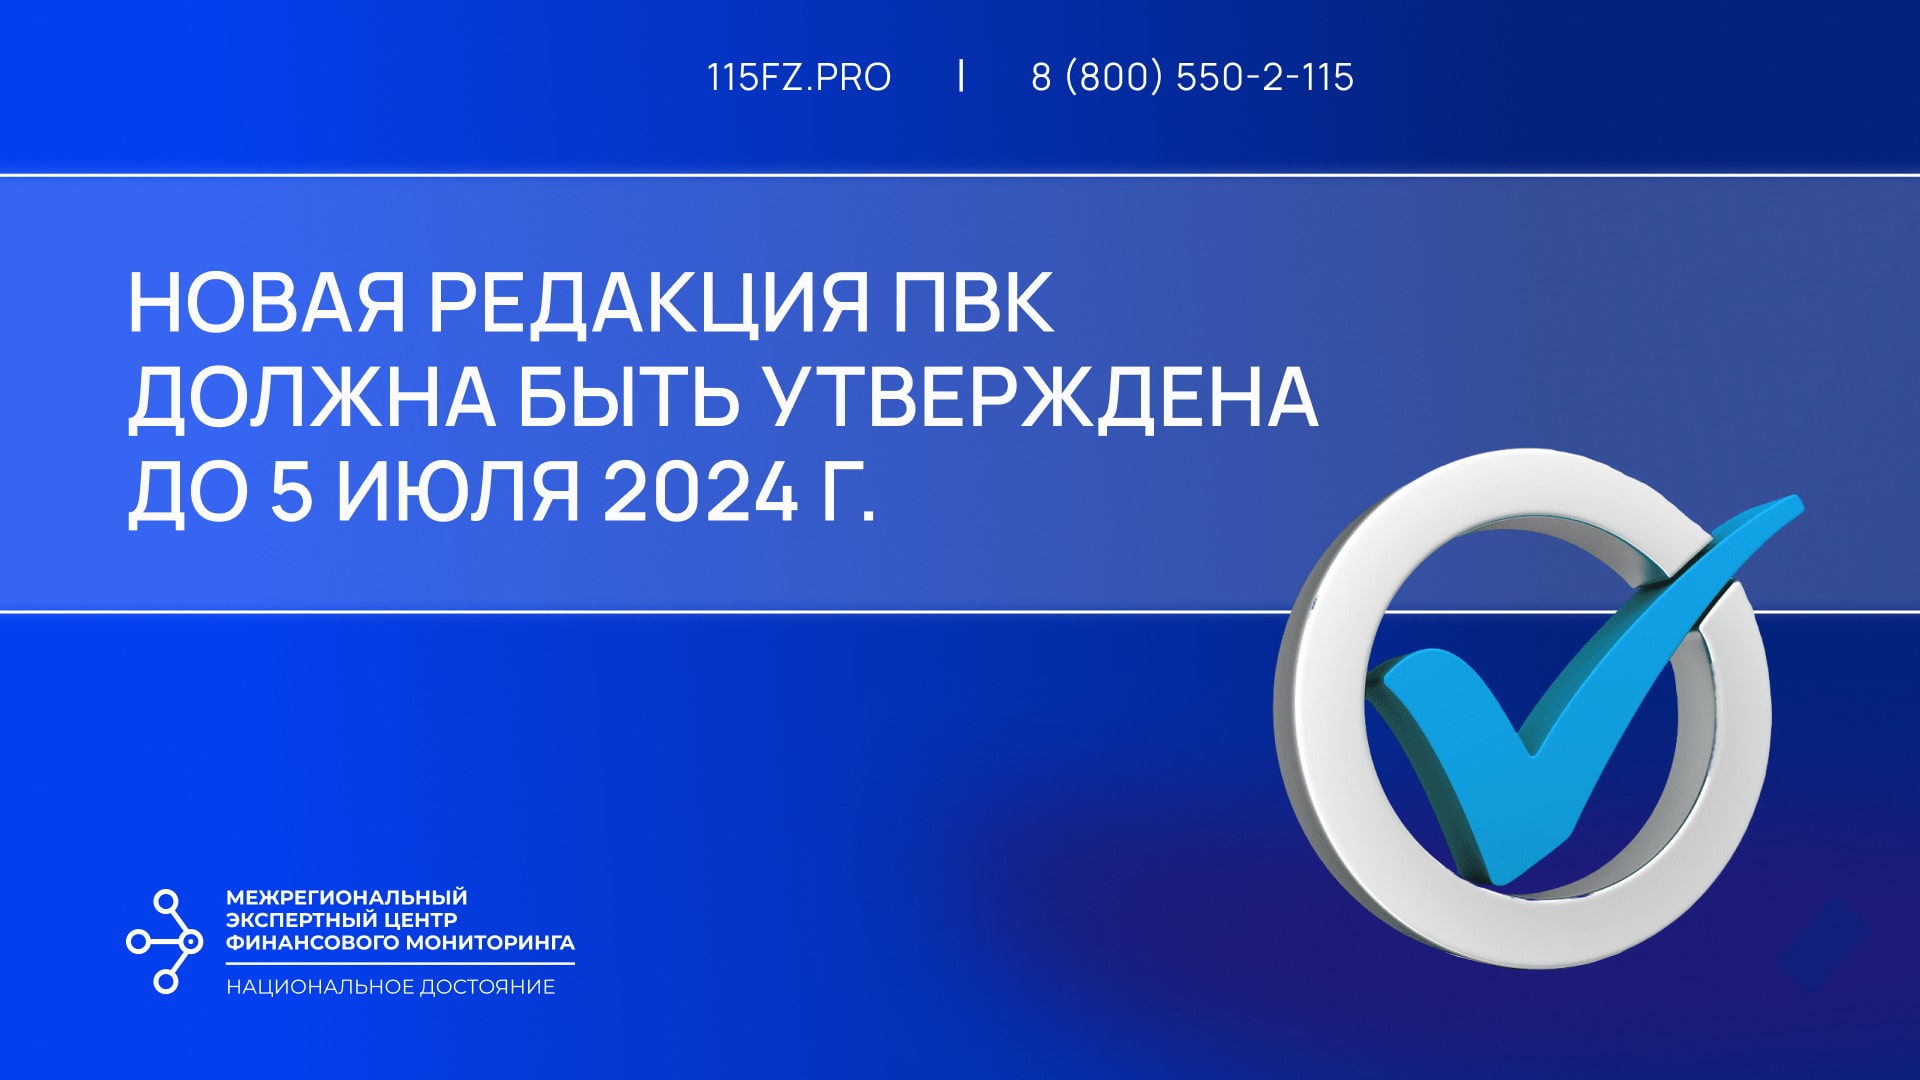 Новая редакция ПВК должна быть утверждена в срок до 5 июля 2024 г.